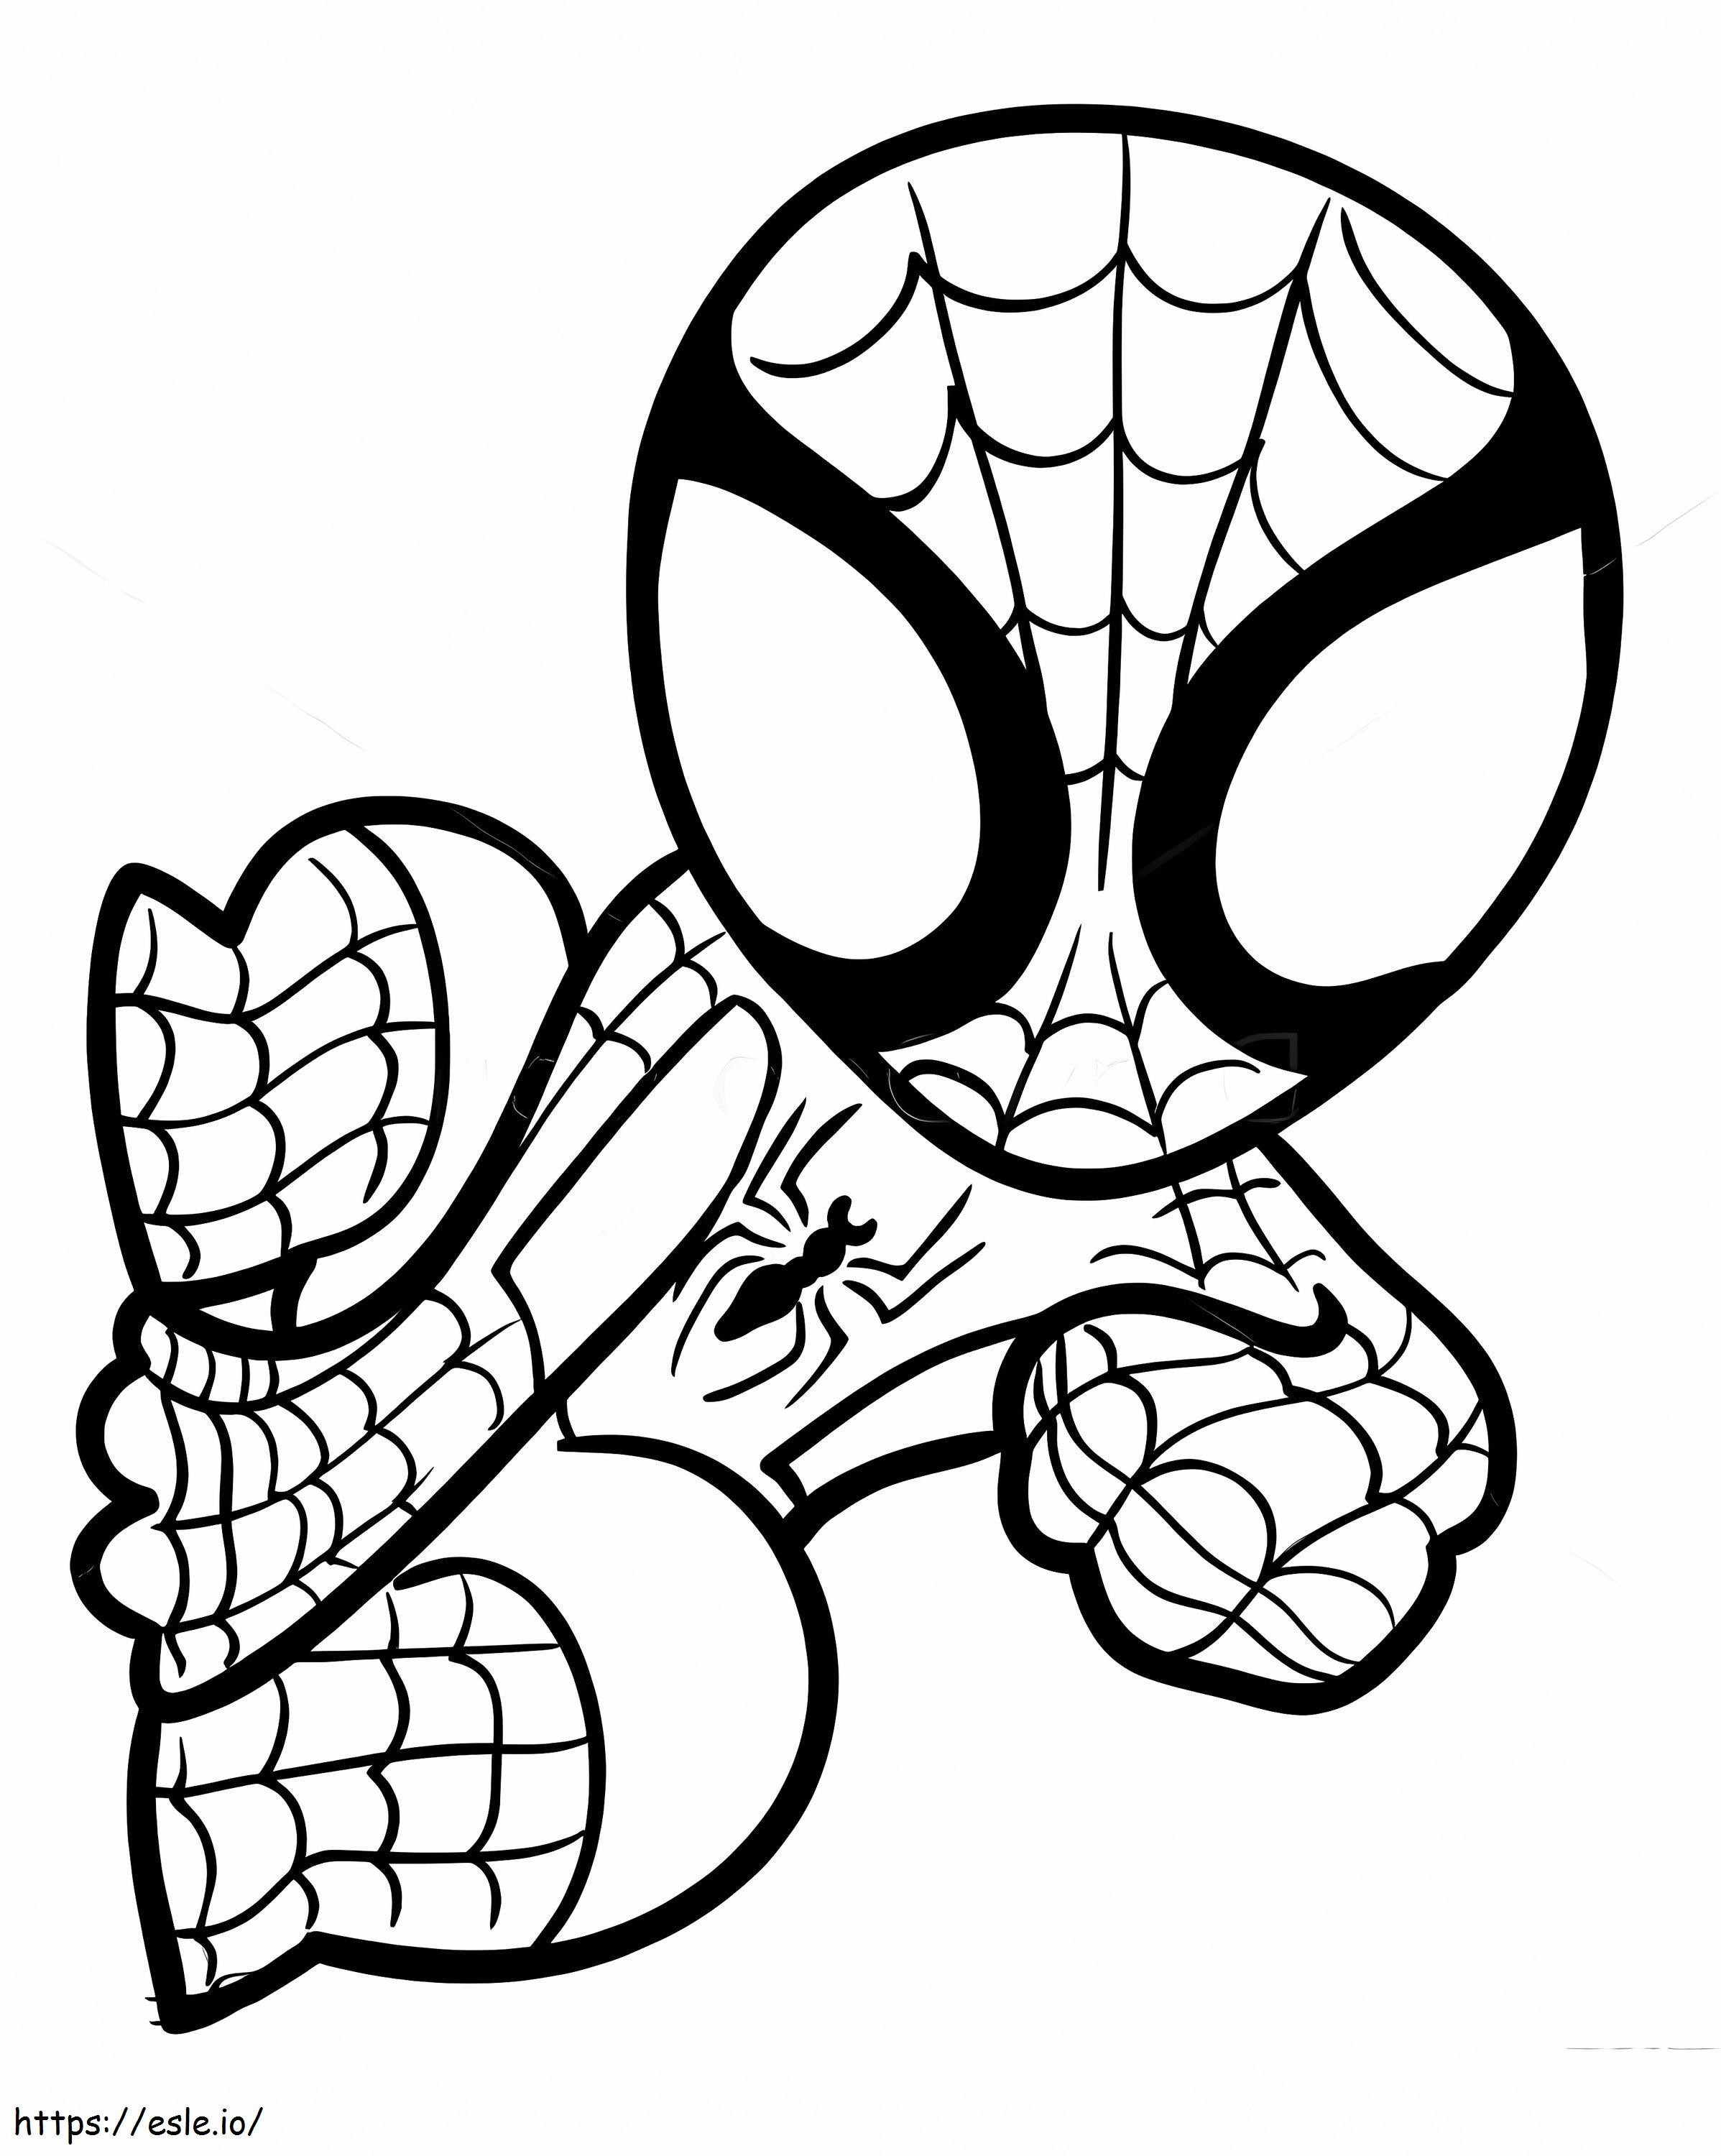 Kleiner Spiderman ausmalbilder